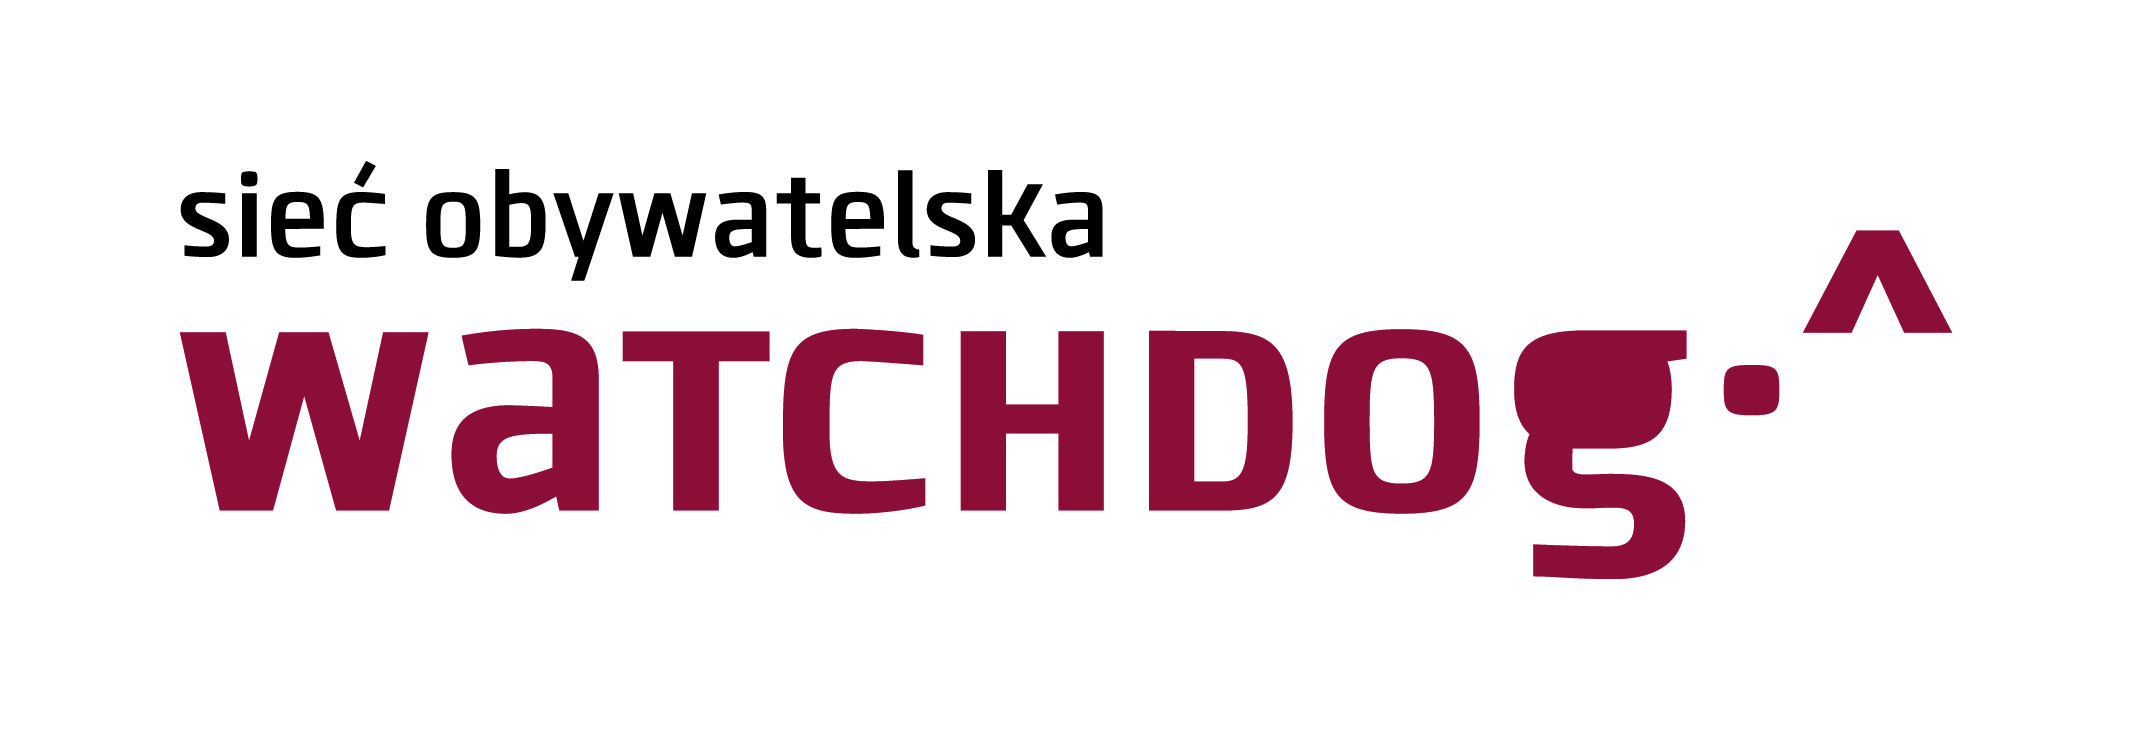 logo sieci obywatelskiej - watchdog polska (napis)